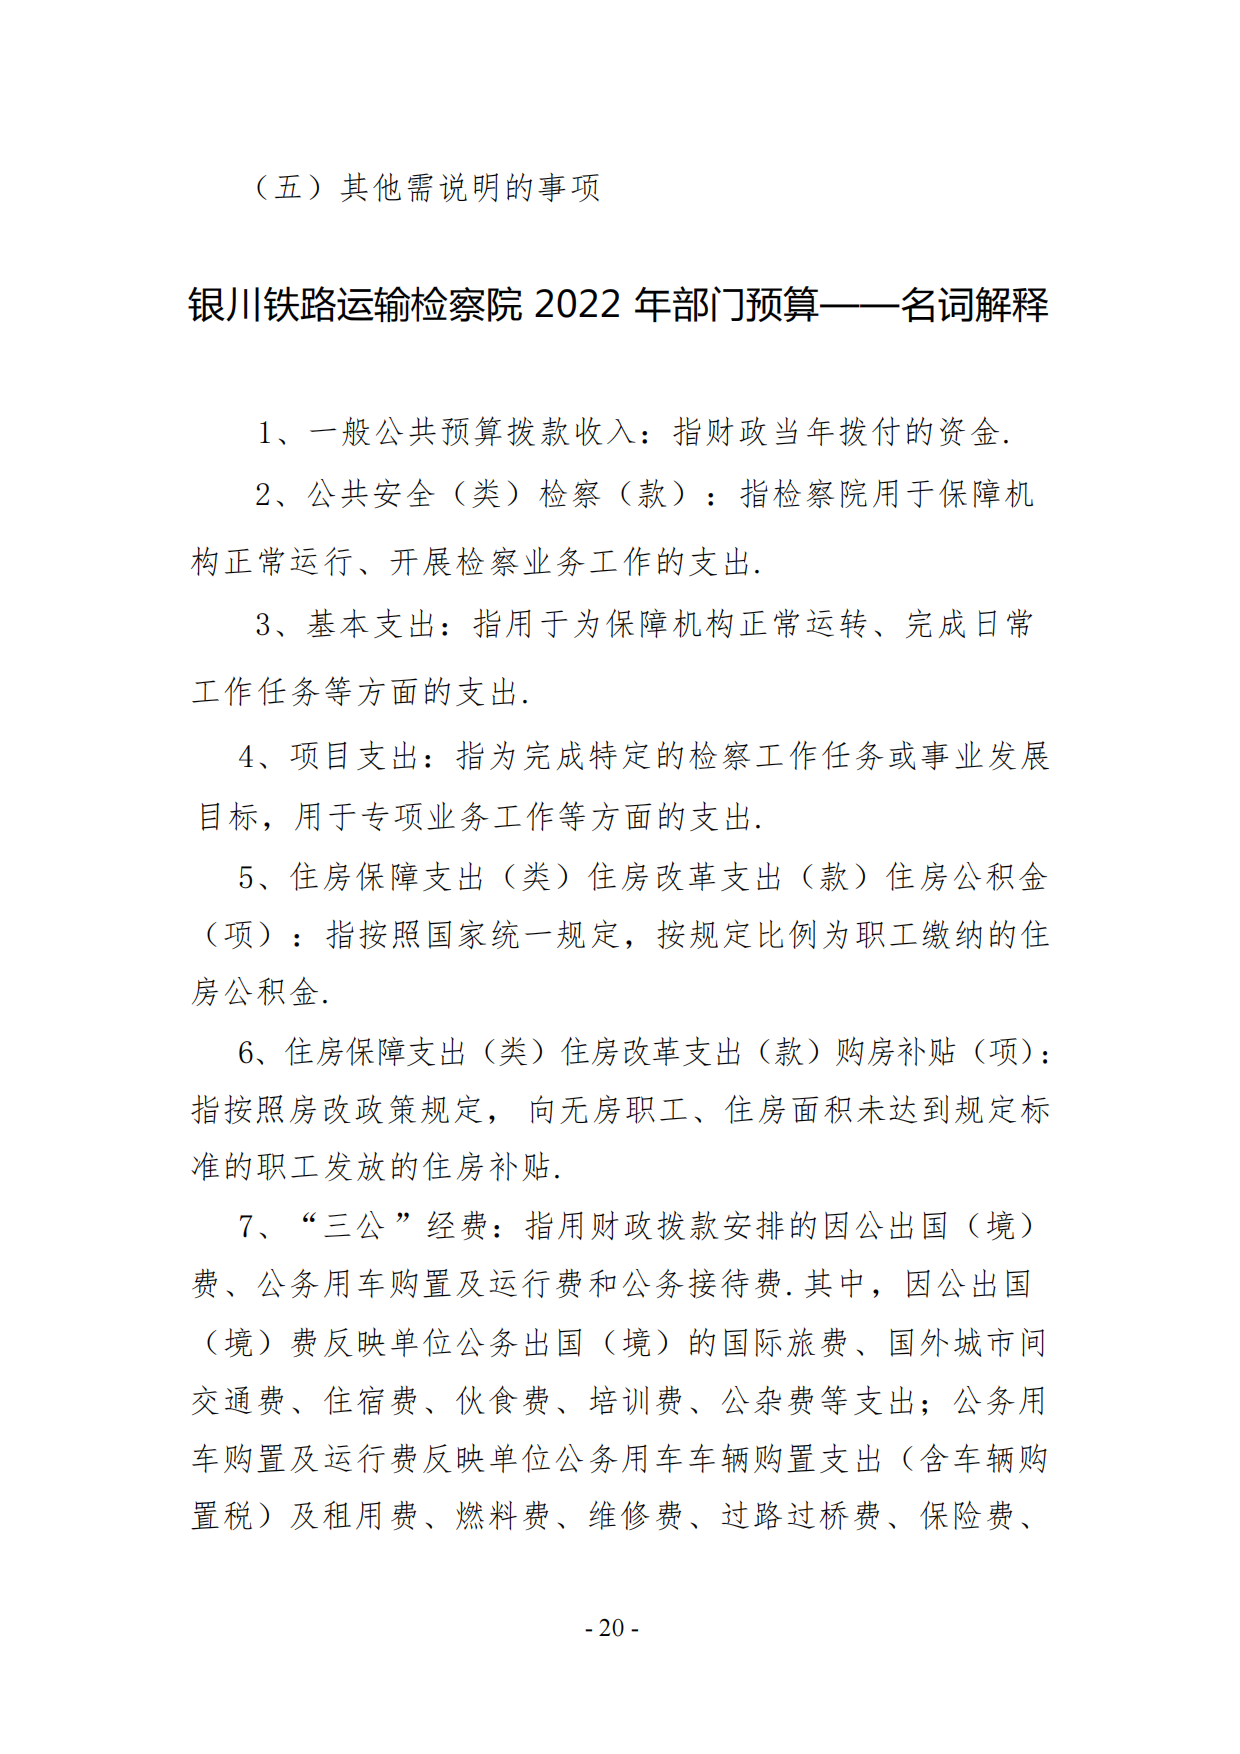 银川铁路运输检察院2022年度预算公开(1)_19.png